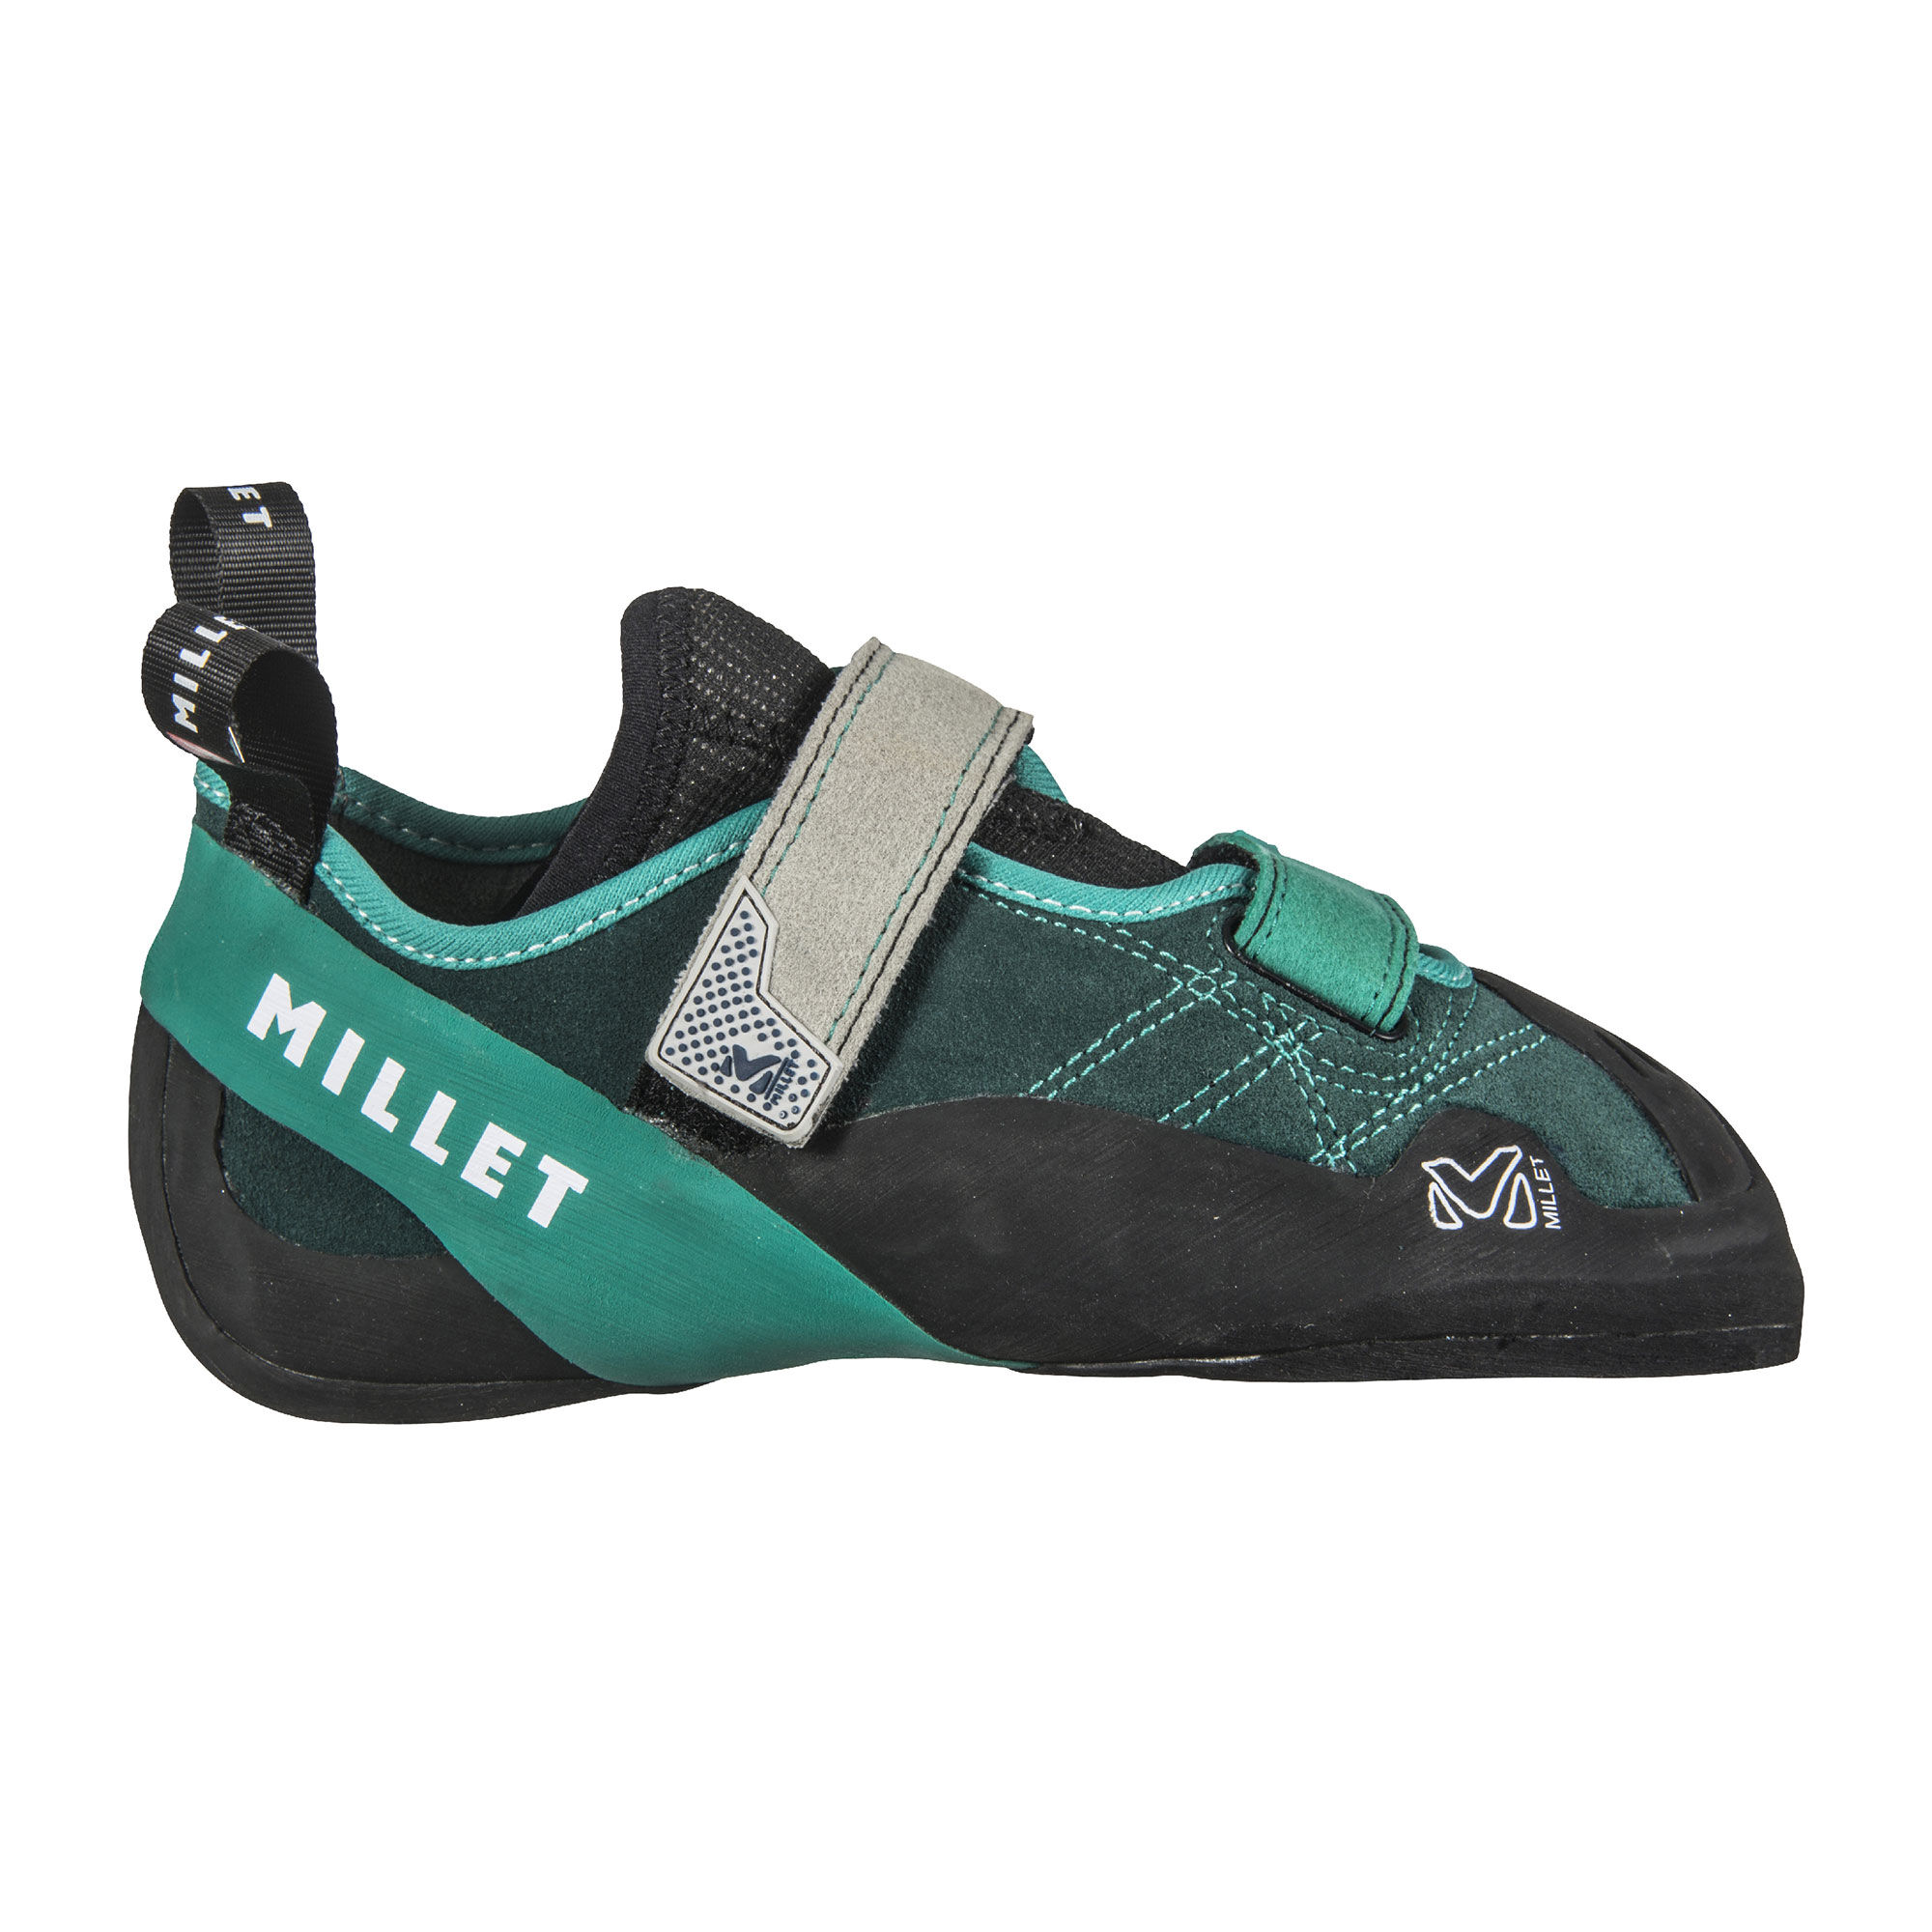 Millet Ld Siurana - Climbing shoes Women's